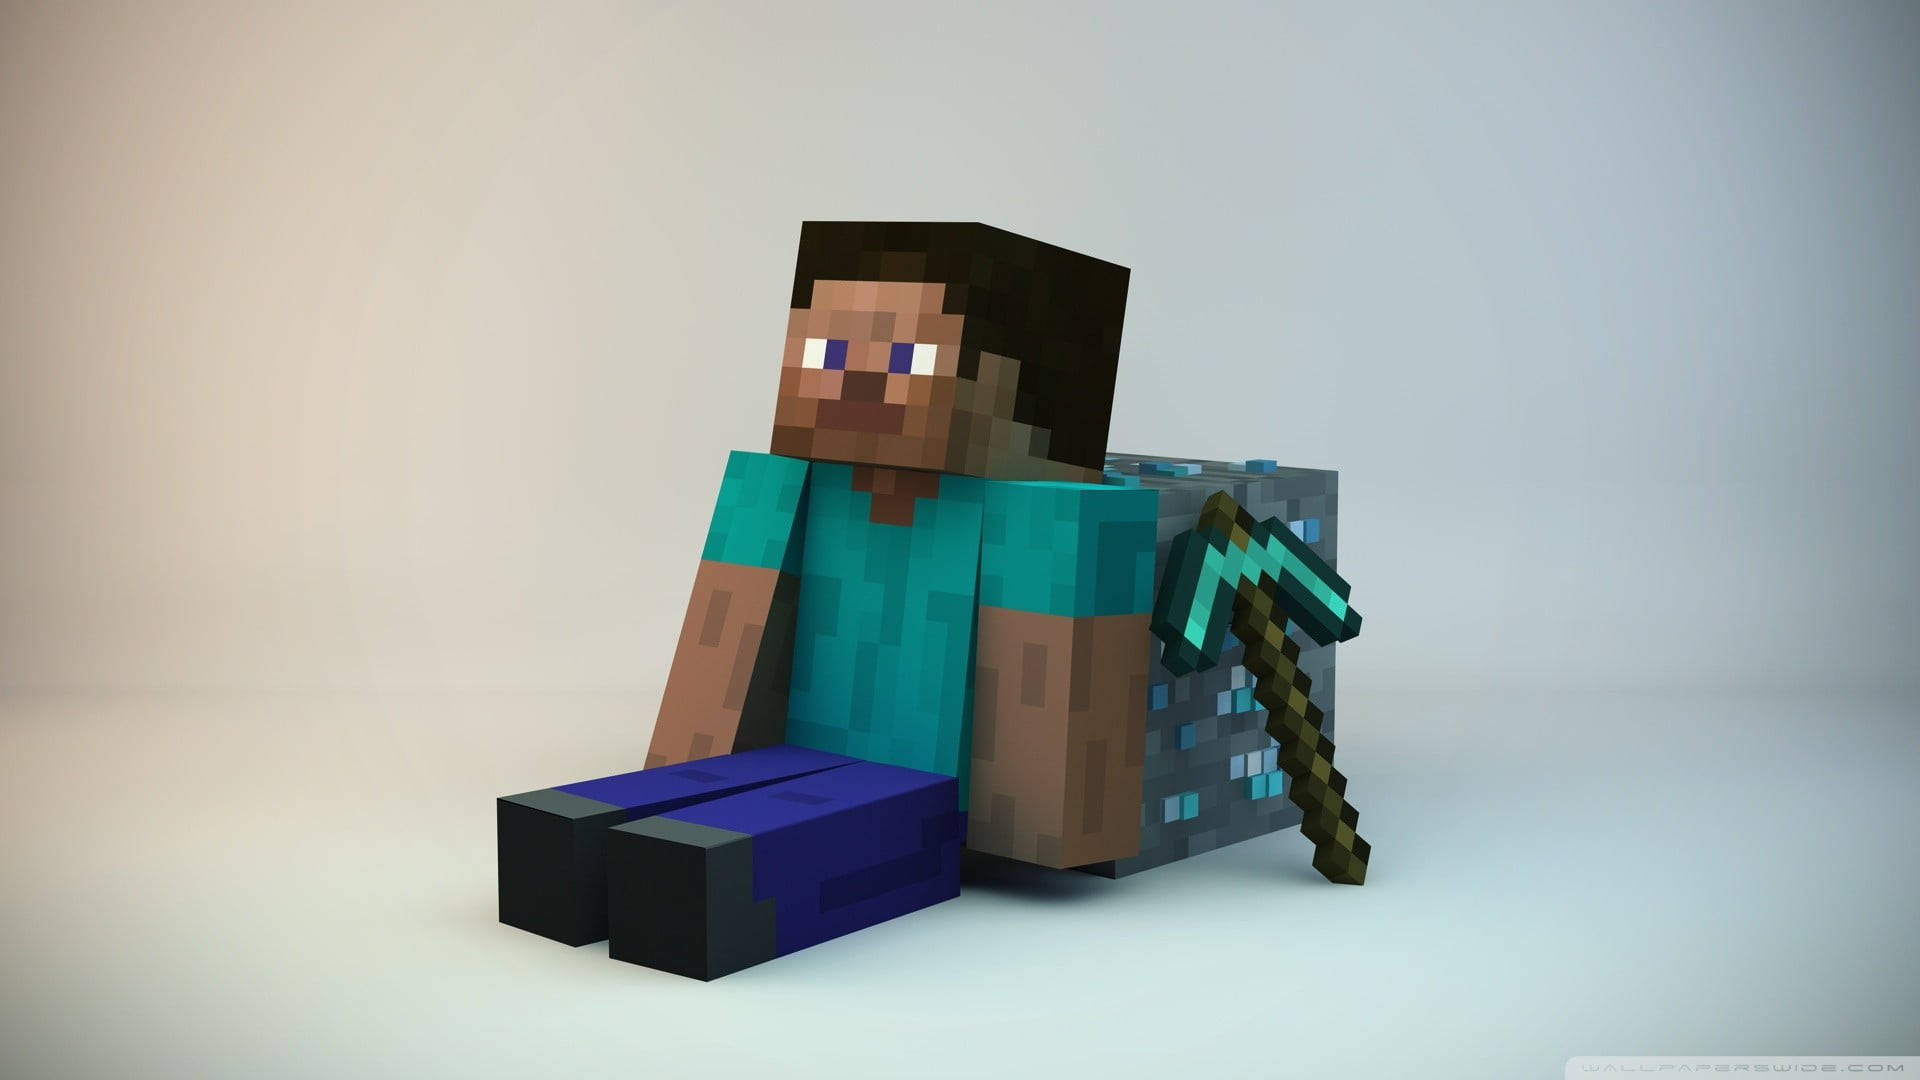 Steve Minimalist Cool Minecraft